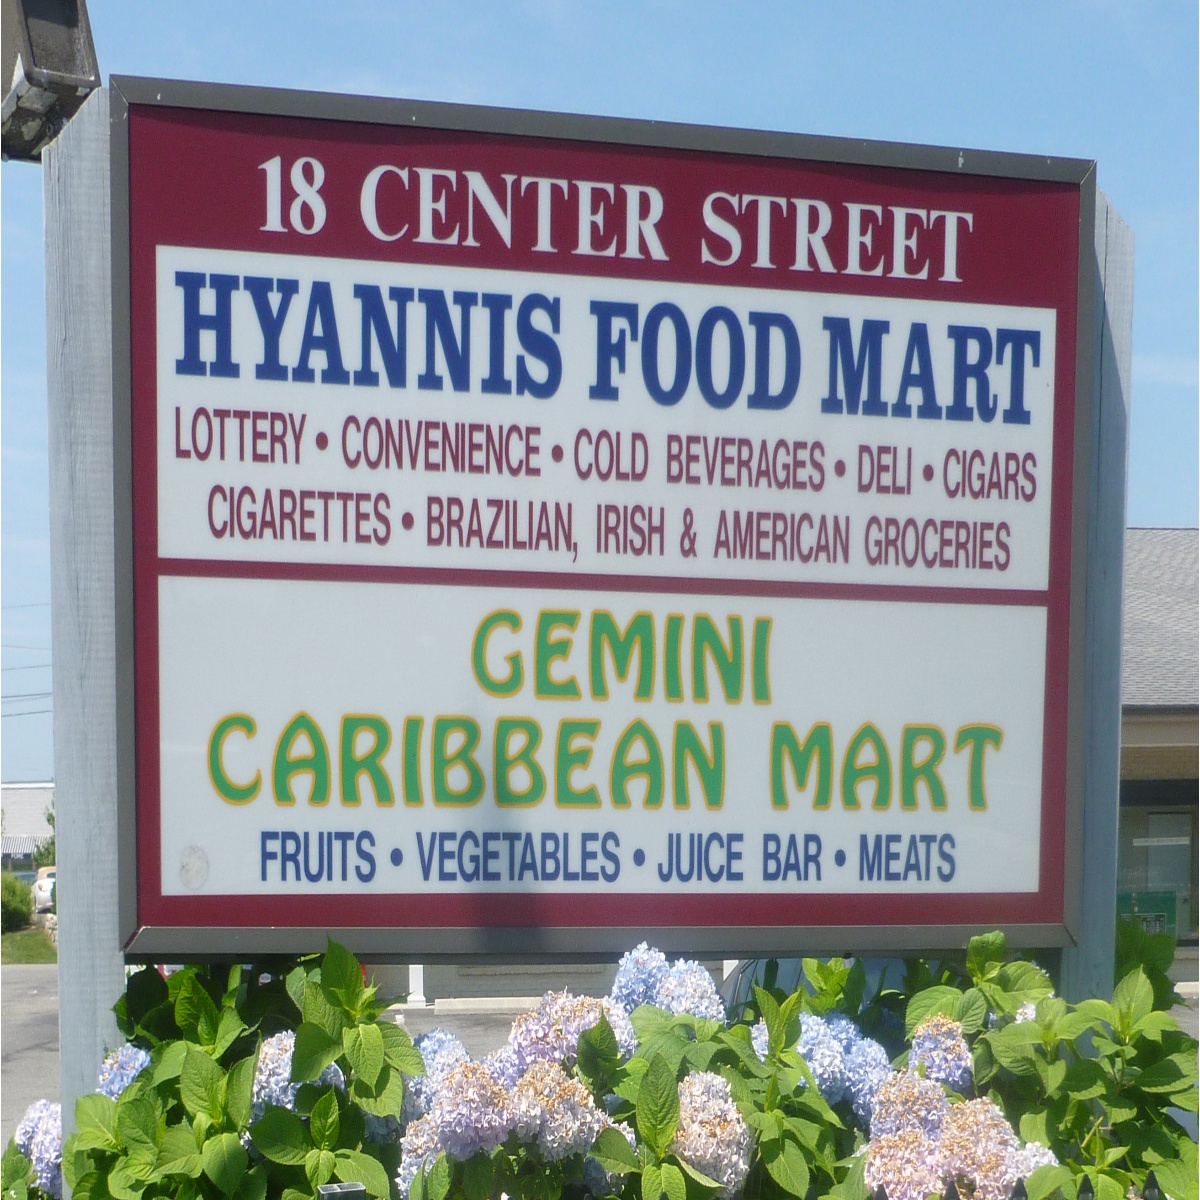 Gemini Caribbean Mart